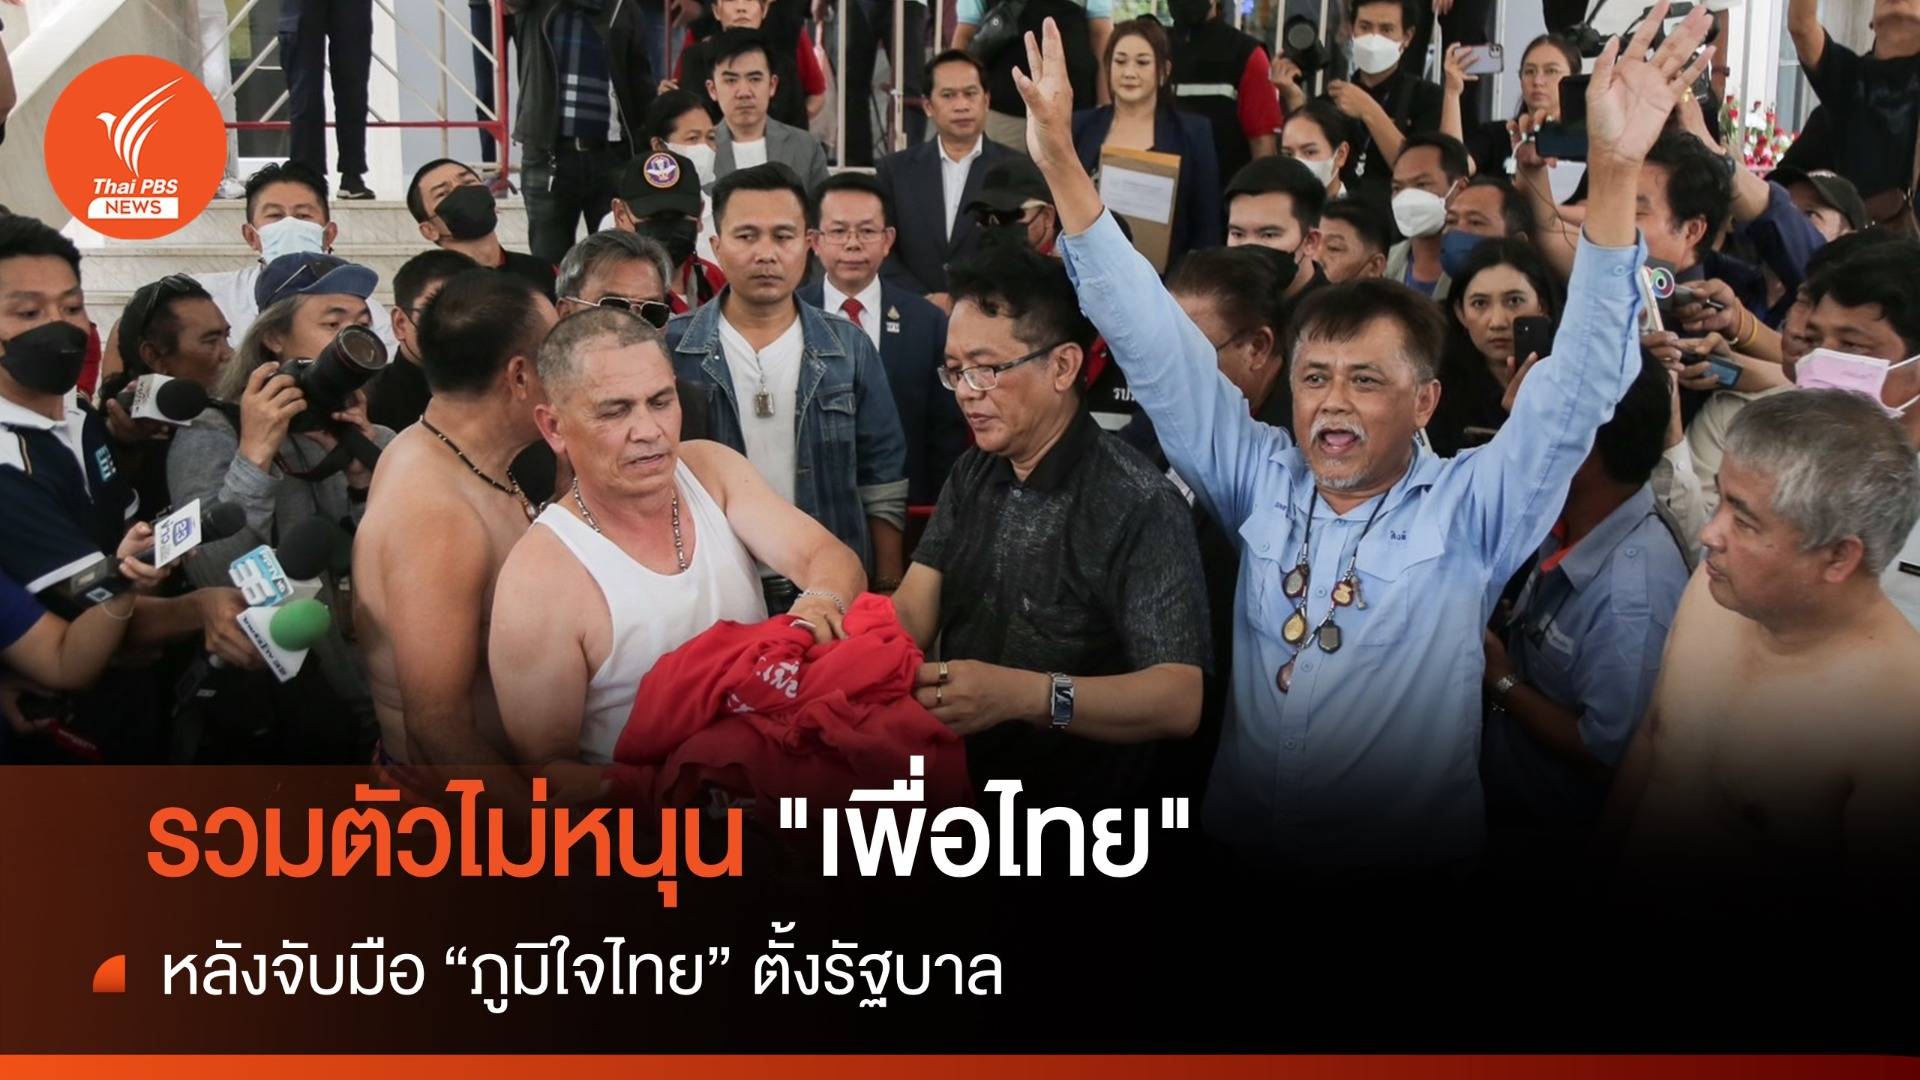  กลุ่มแท็กซี่ประกาศไม่หนุน "เพื่อไทย" หลังจัดตั้งรัฐบาลกับ "ภูมิใจไทย" 